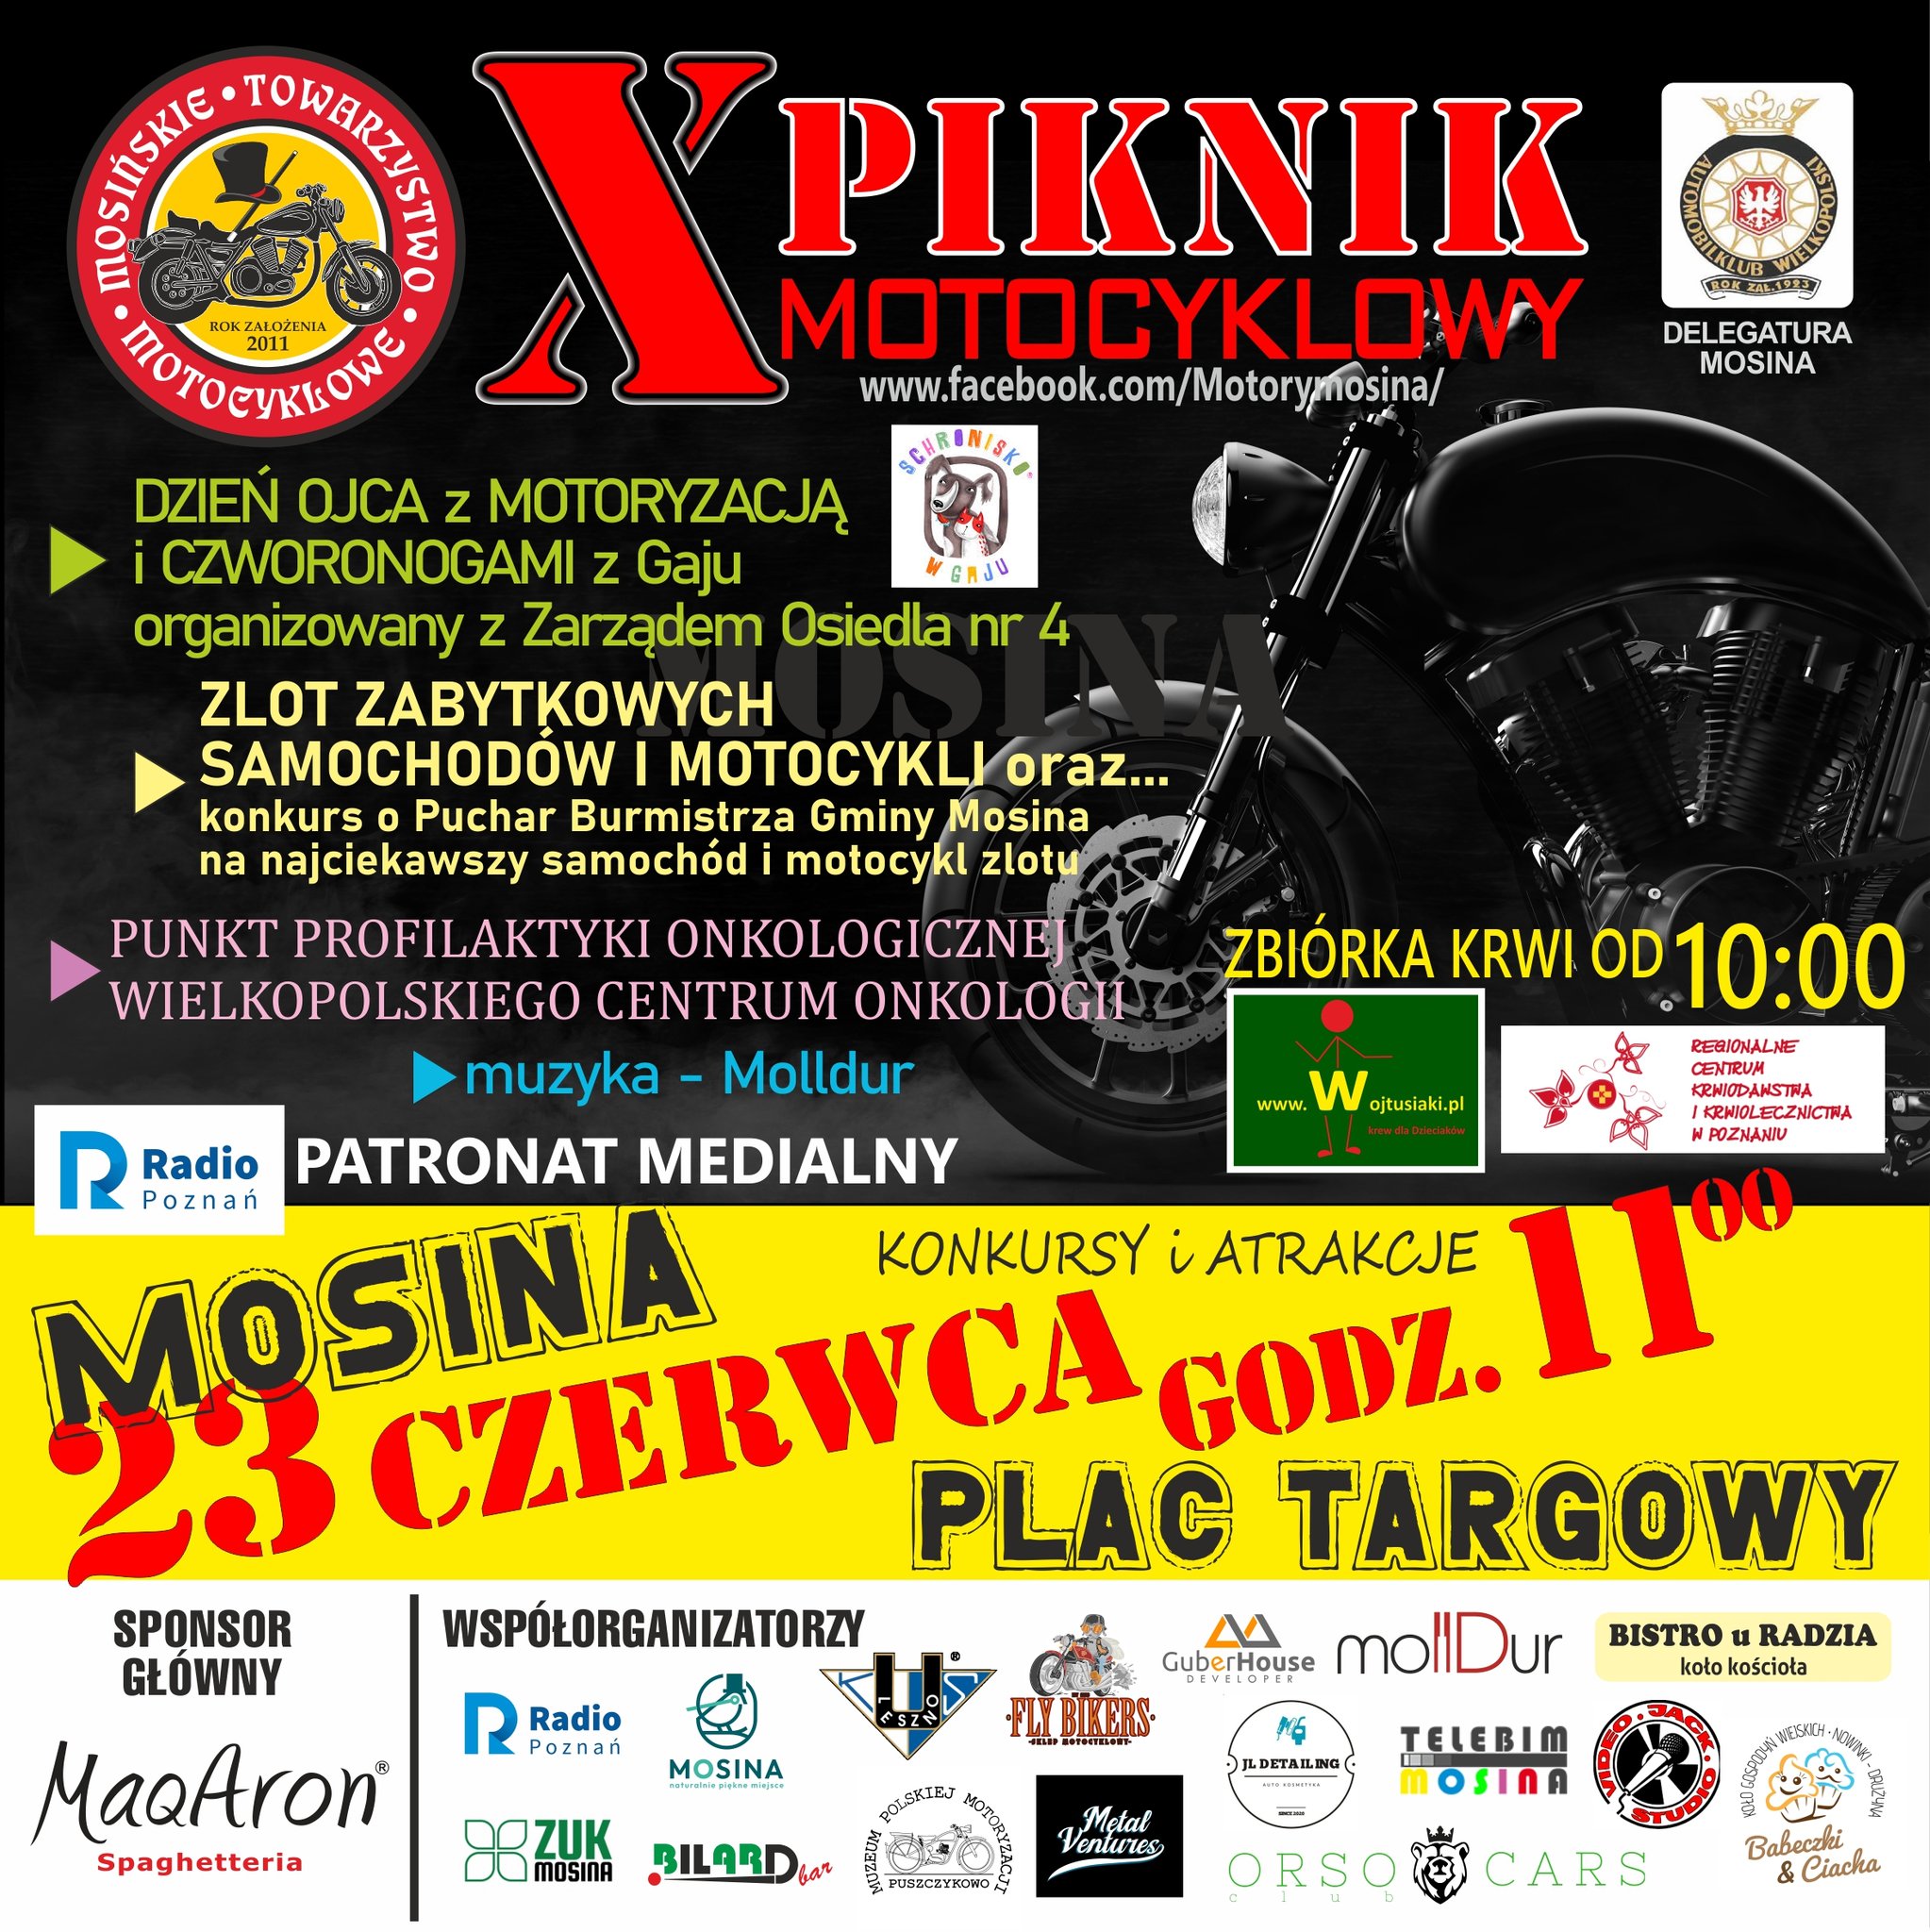 X Piknik Motocyklowy Mosina